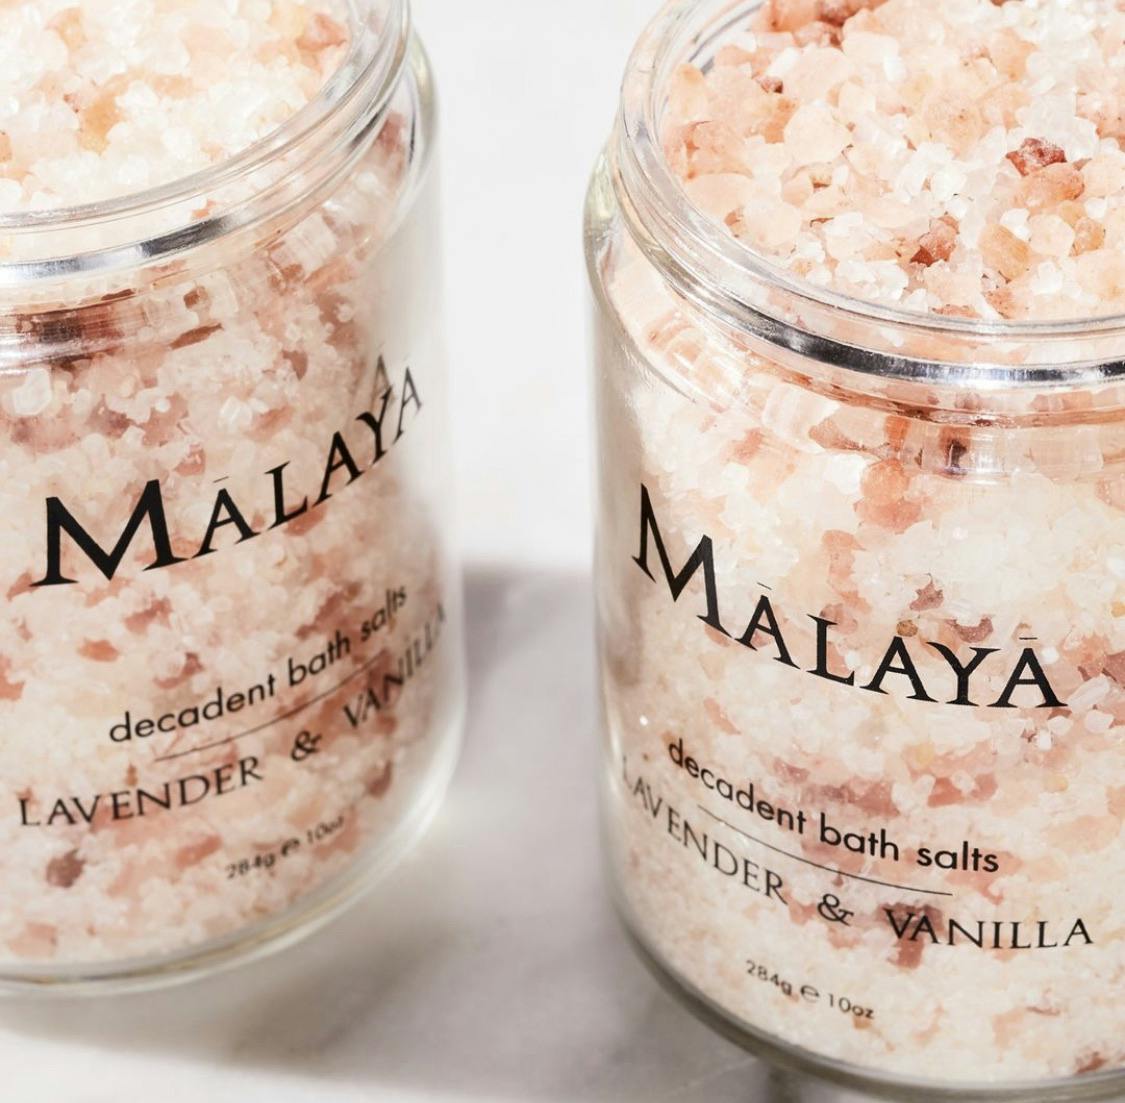 Decadent bath salts by Malaya Organics 